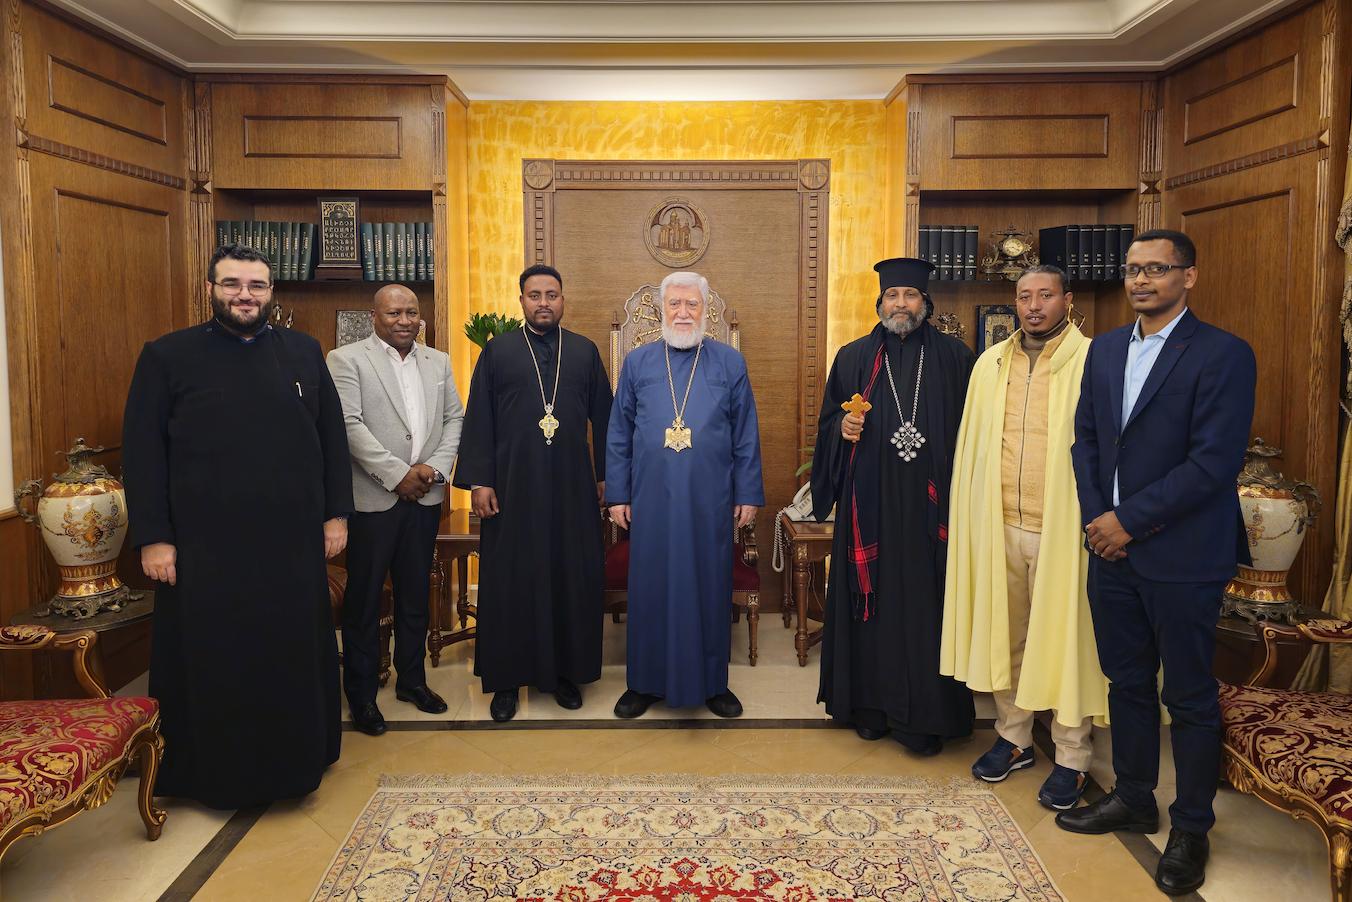 Catholicos Aram I Received Delegation from Ethiopian Community in Lebanon